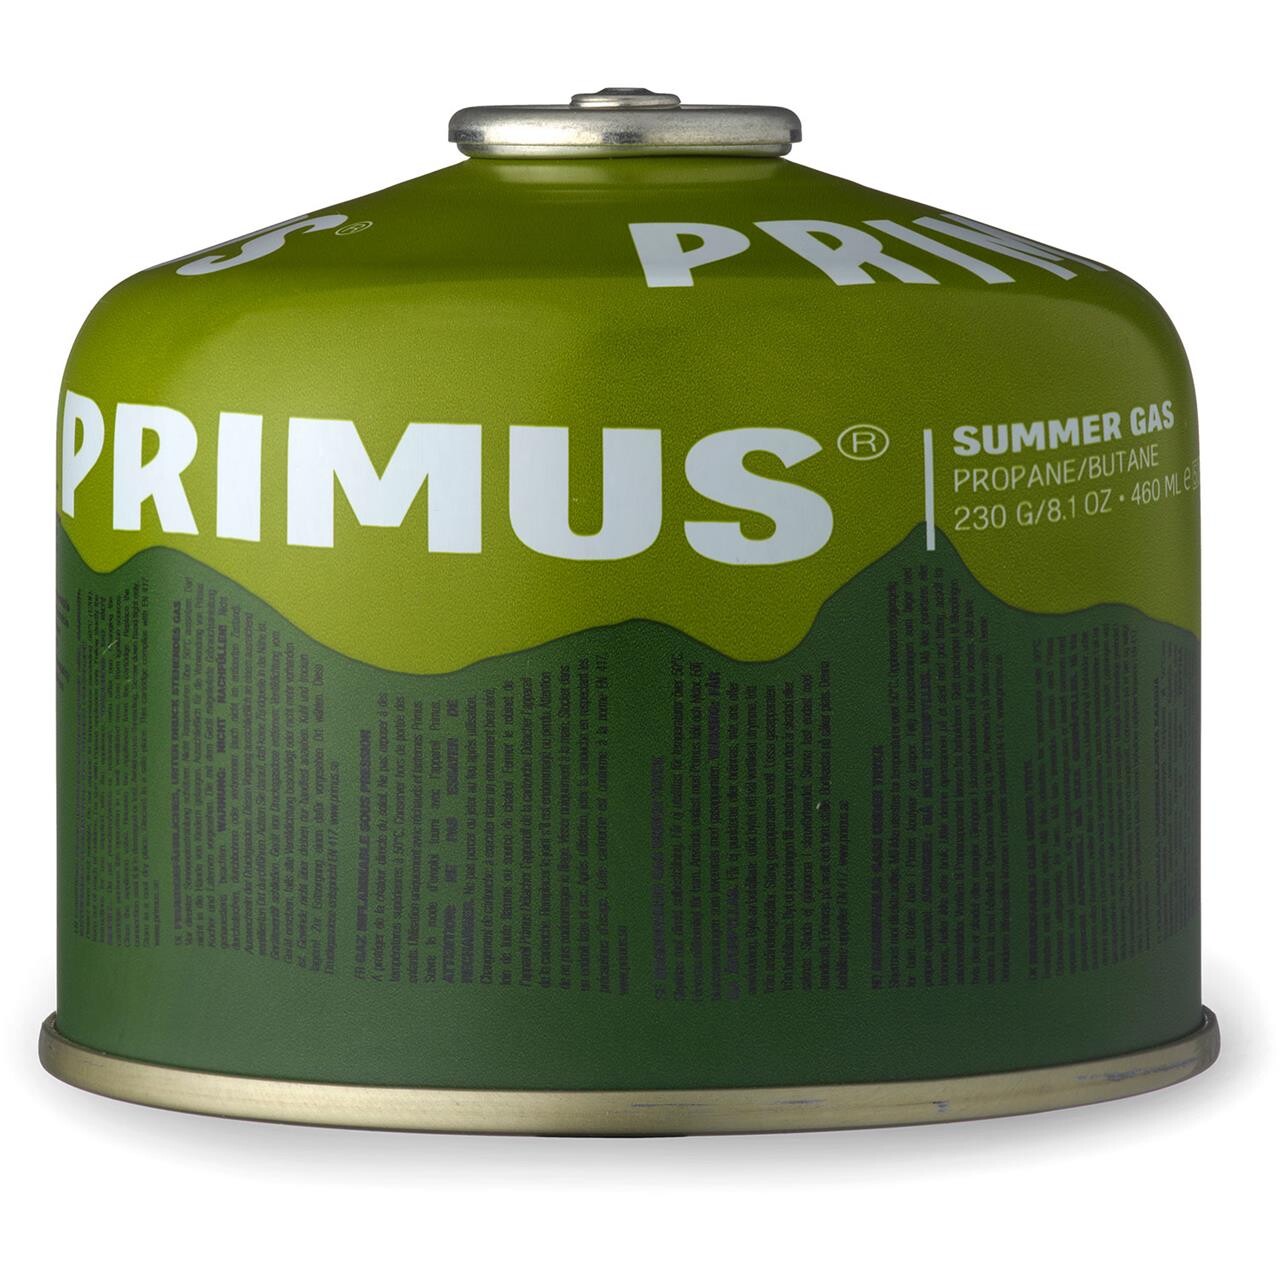 Se Primus Summer Gas 230g hos Friluftsland.dk